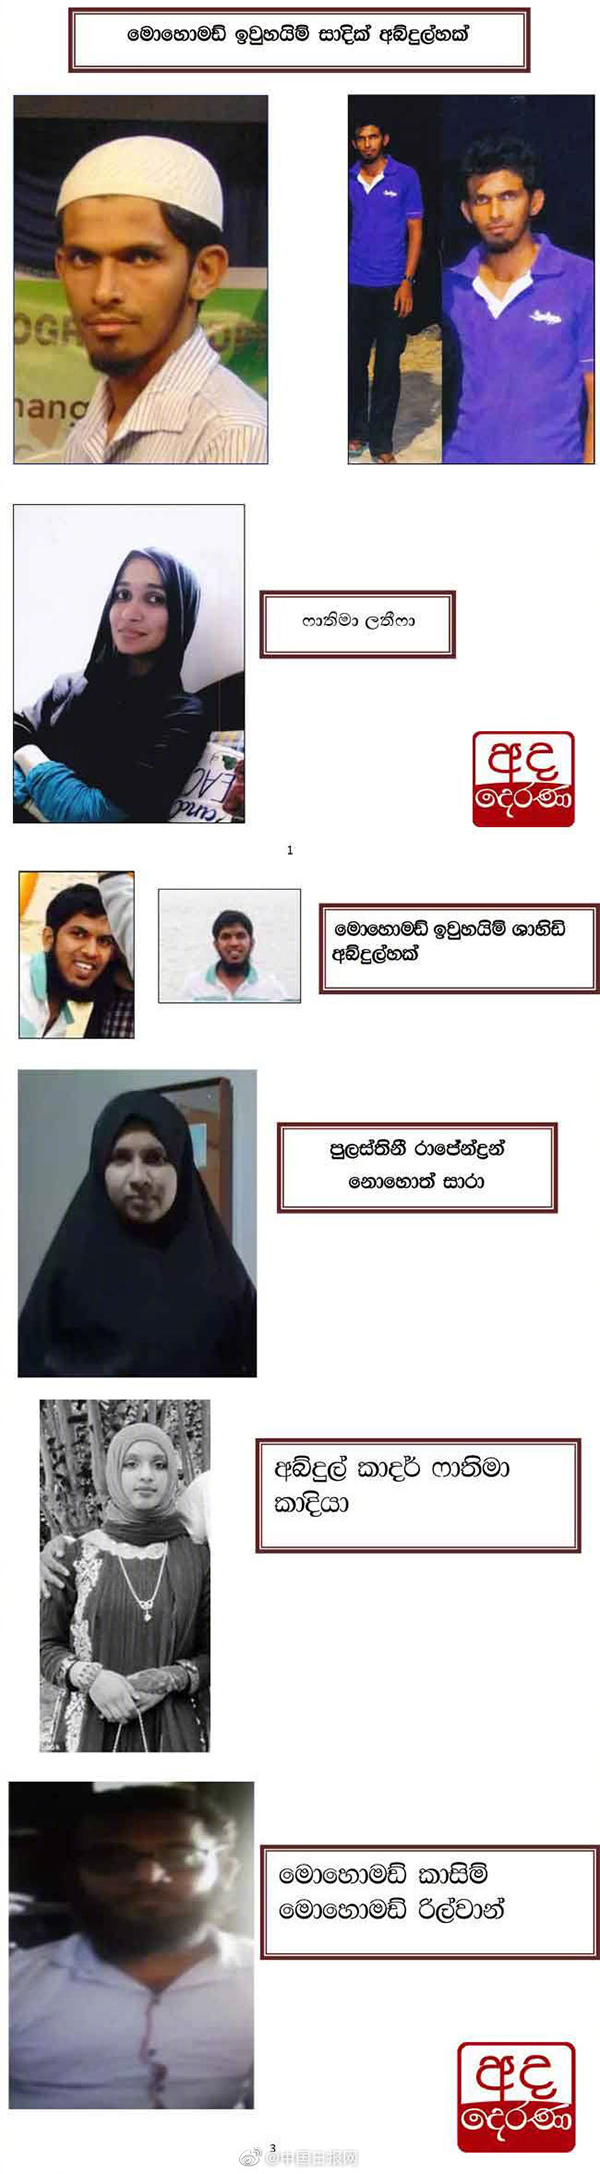 斯里兰卡公布6名爆炸案疑犯照片姓名 包括3名女性